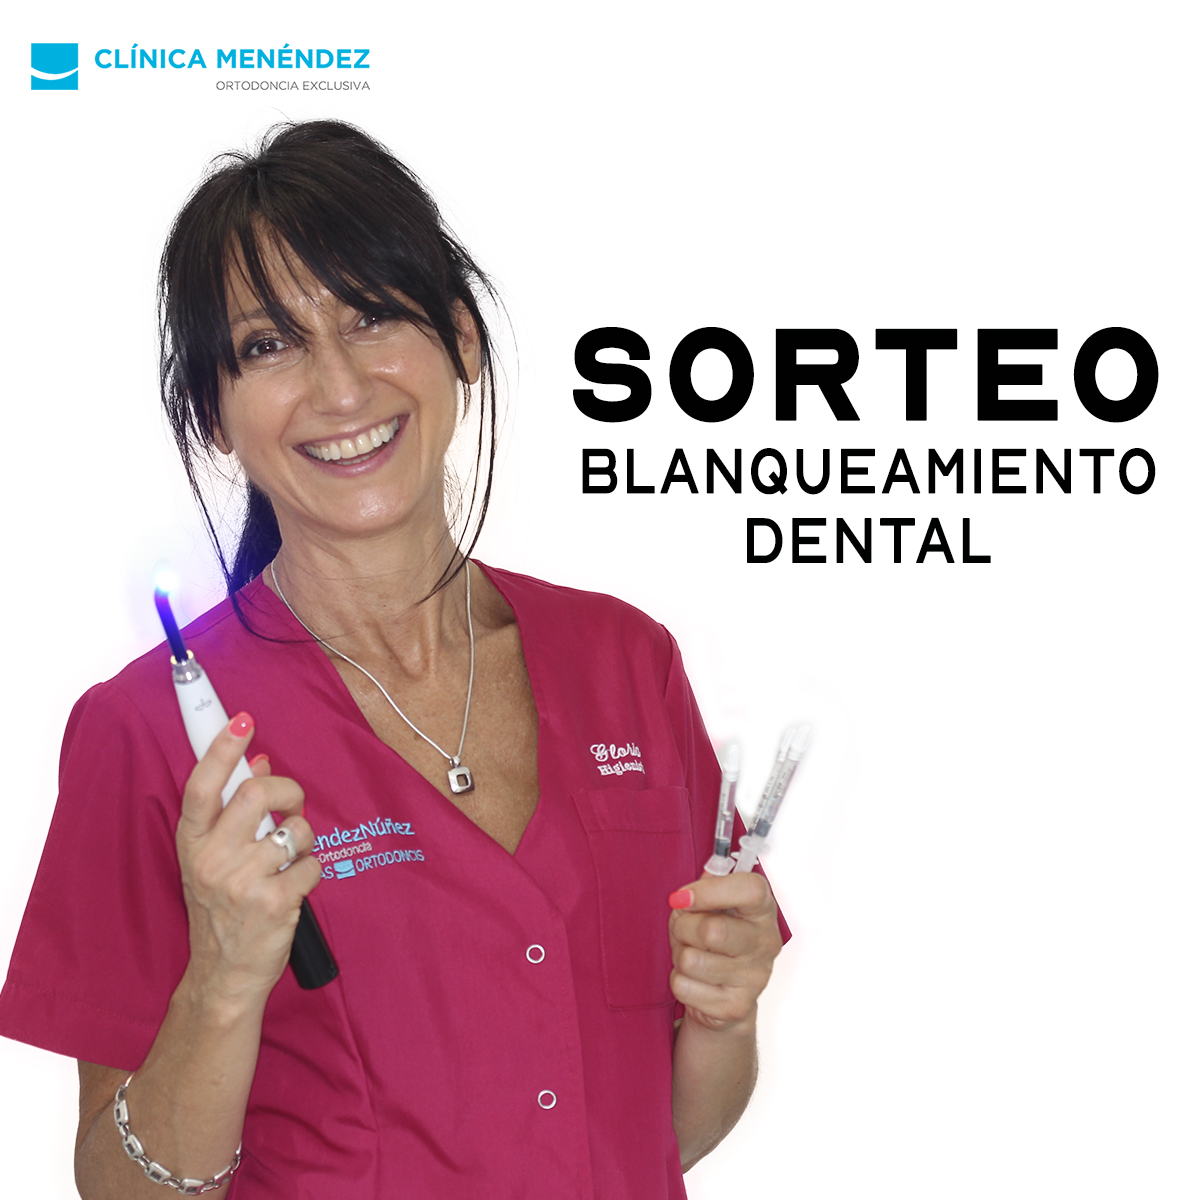 Bases legales Sorteo Blanqueamiento Dental Clínica Menéndez | Granada